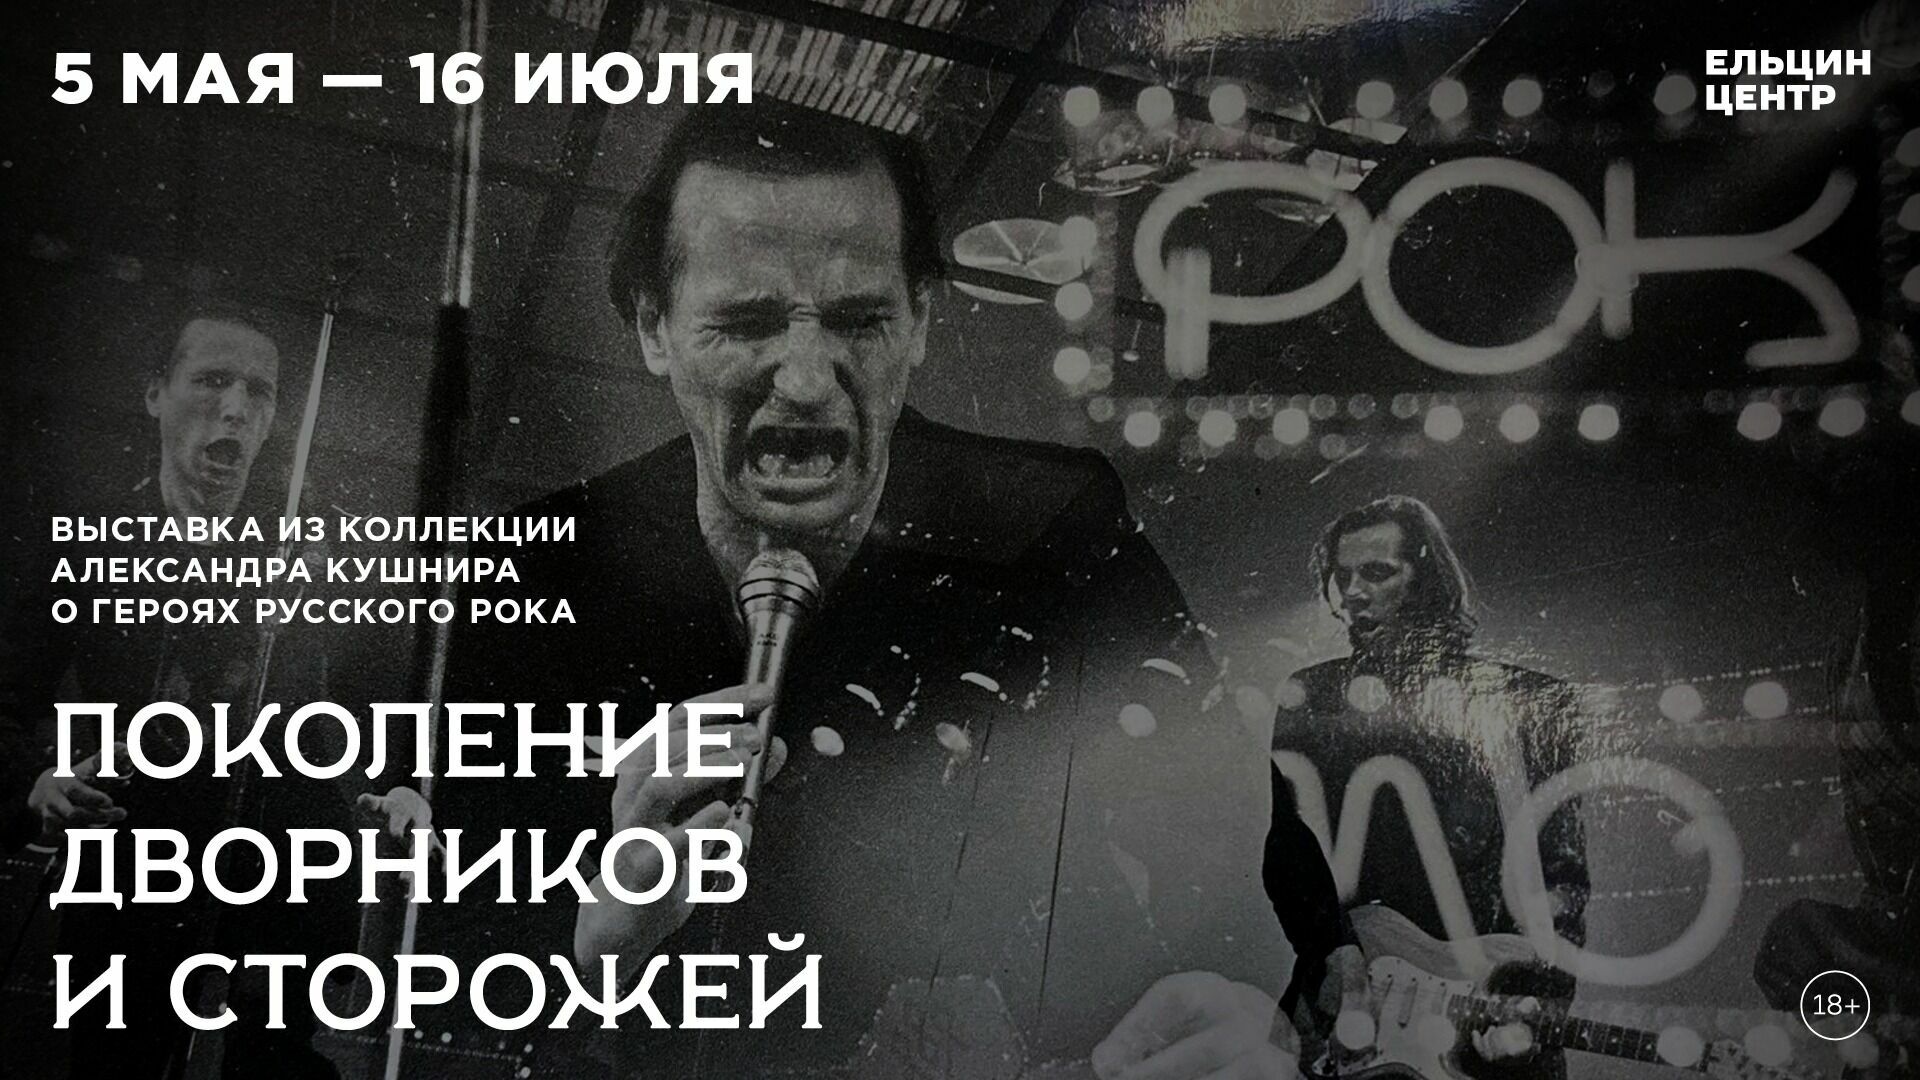 Рок-н-ролл жив! В Екатеринбурге пройдет выставка, посвященная русскому року 1980-90-х